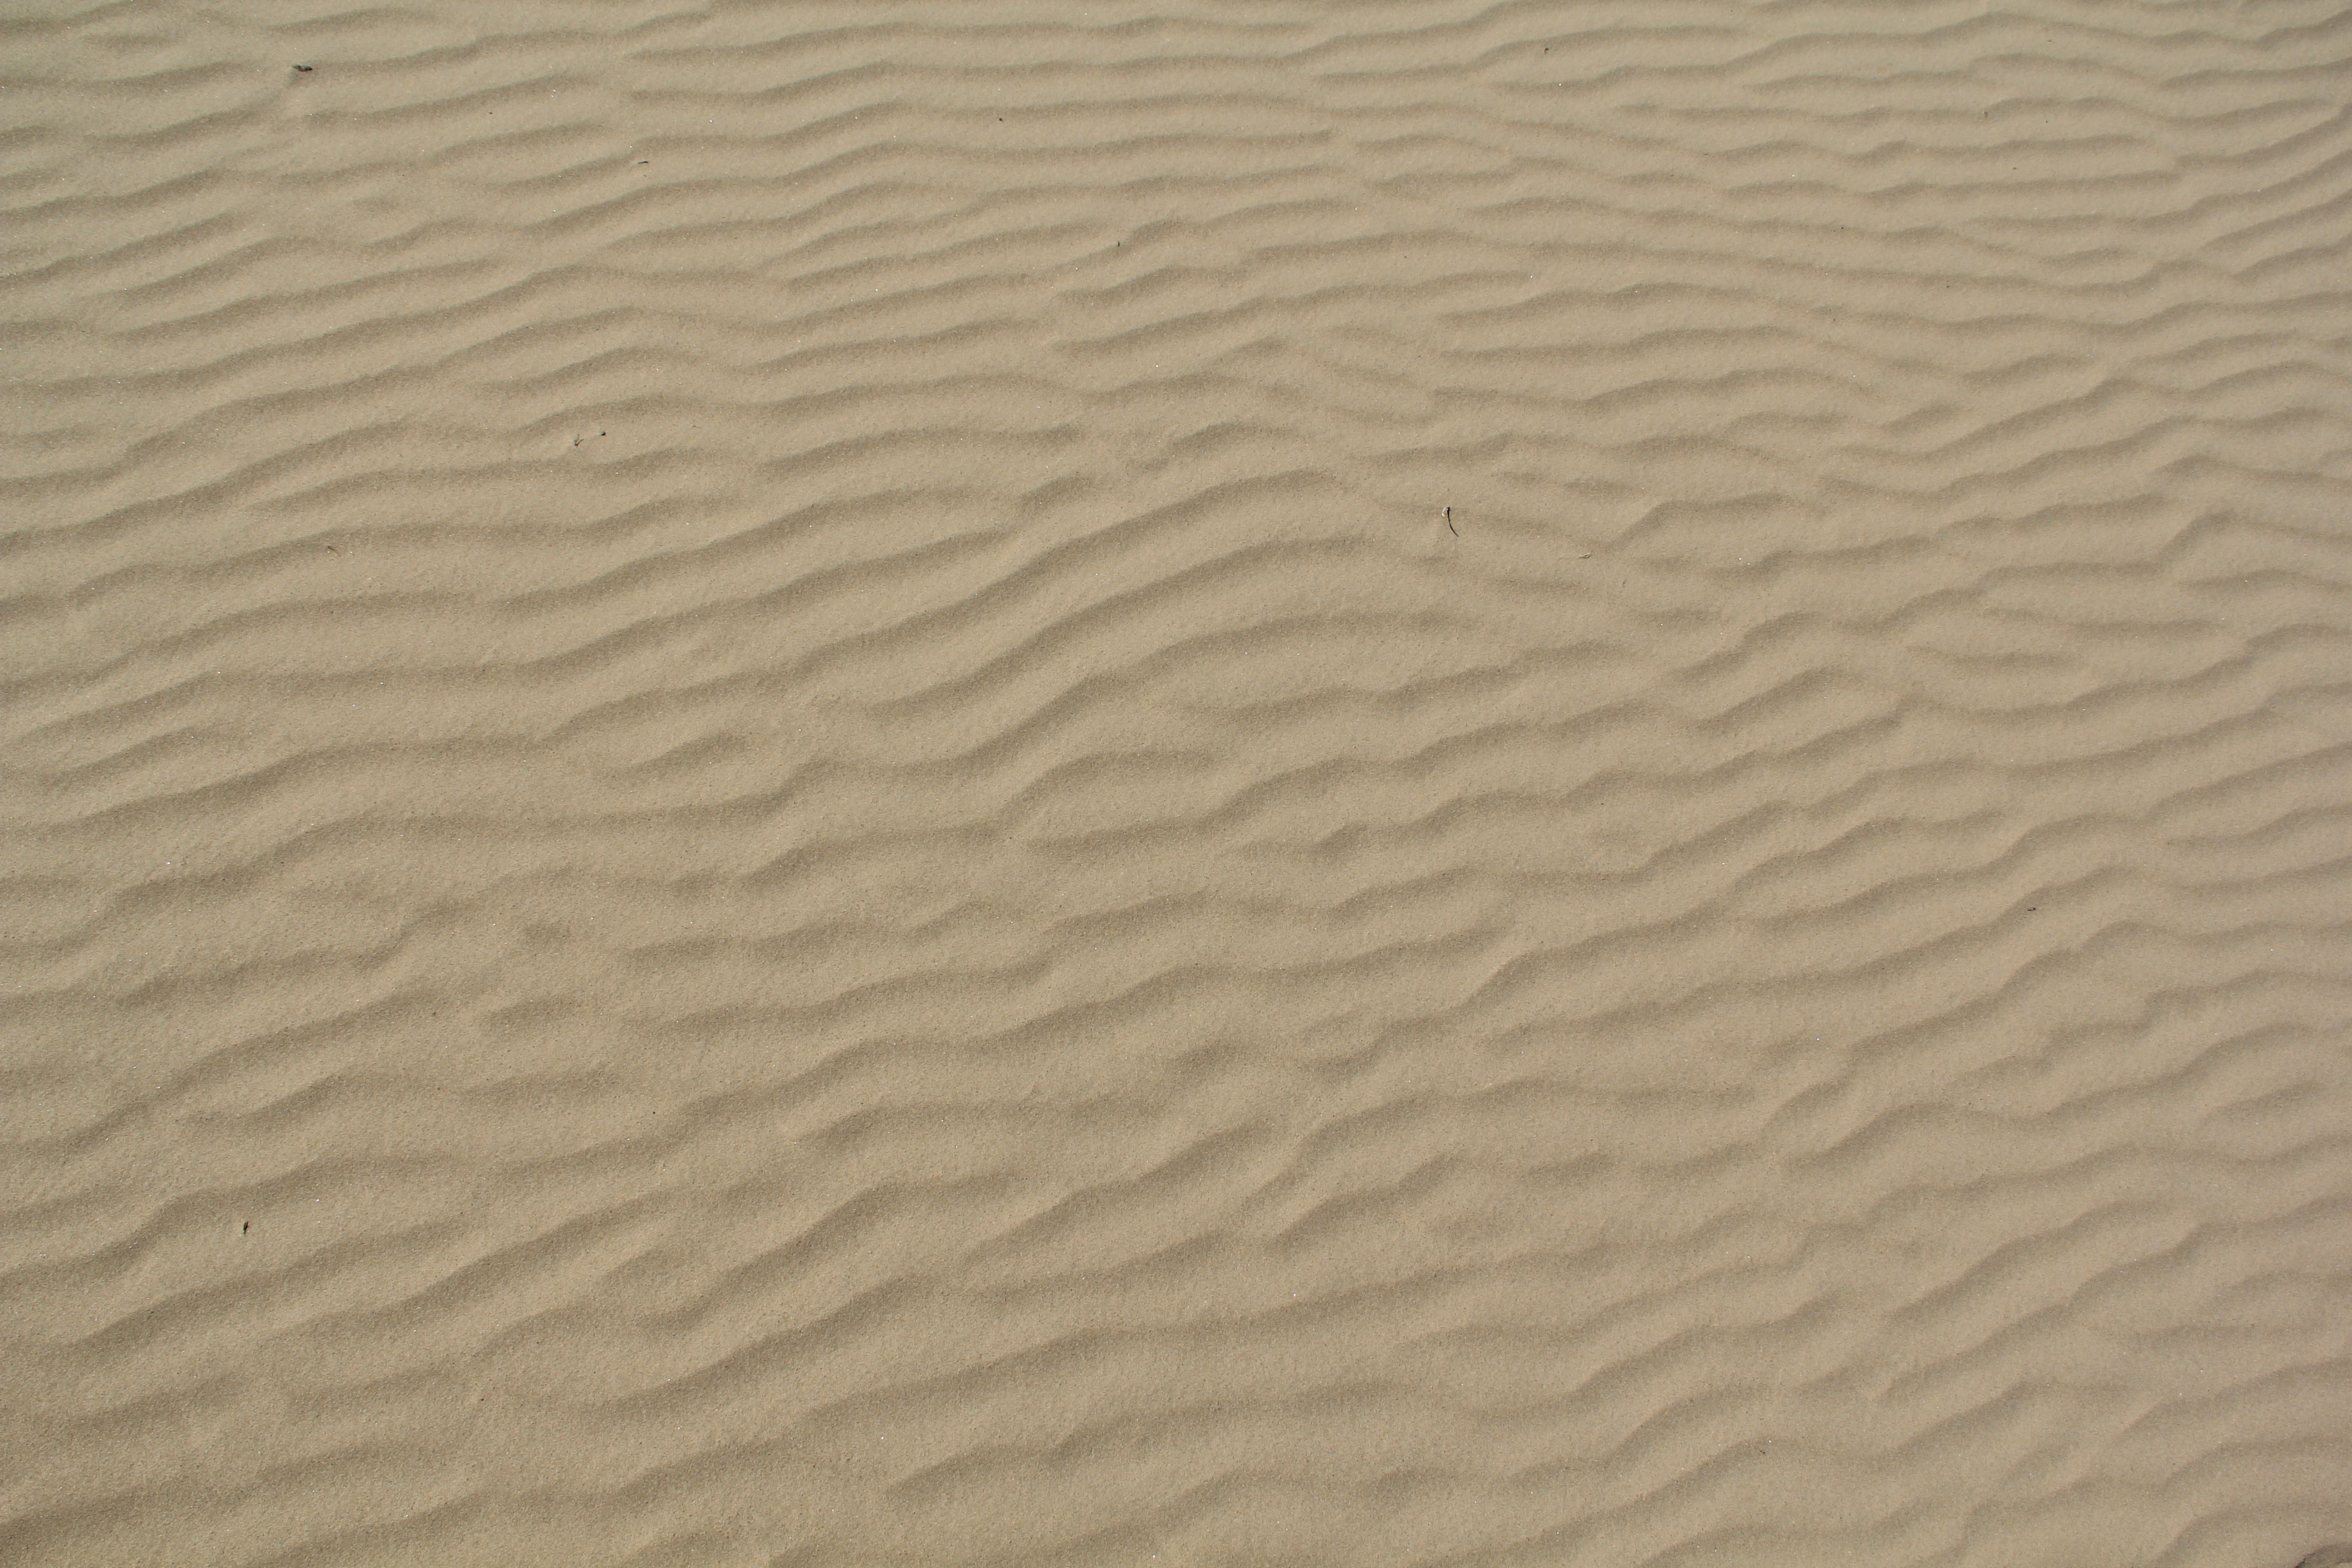 texturex white sand texture light ripples beach dune texture ...